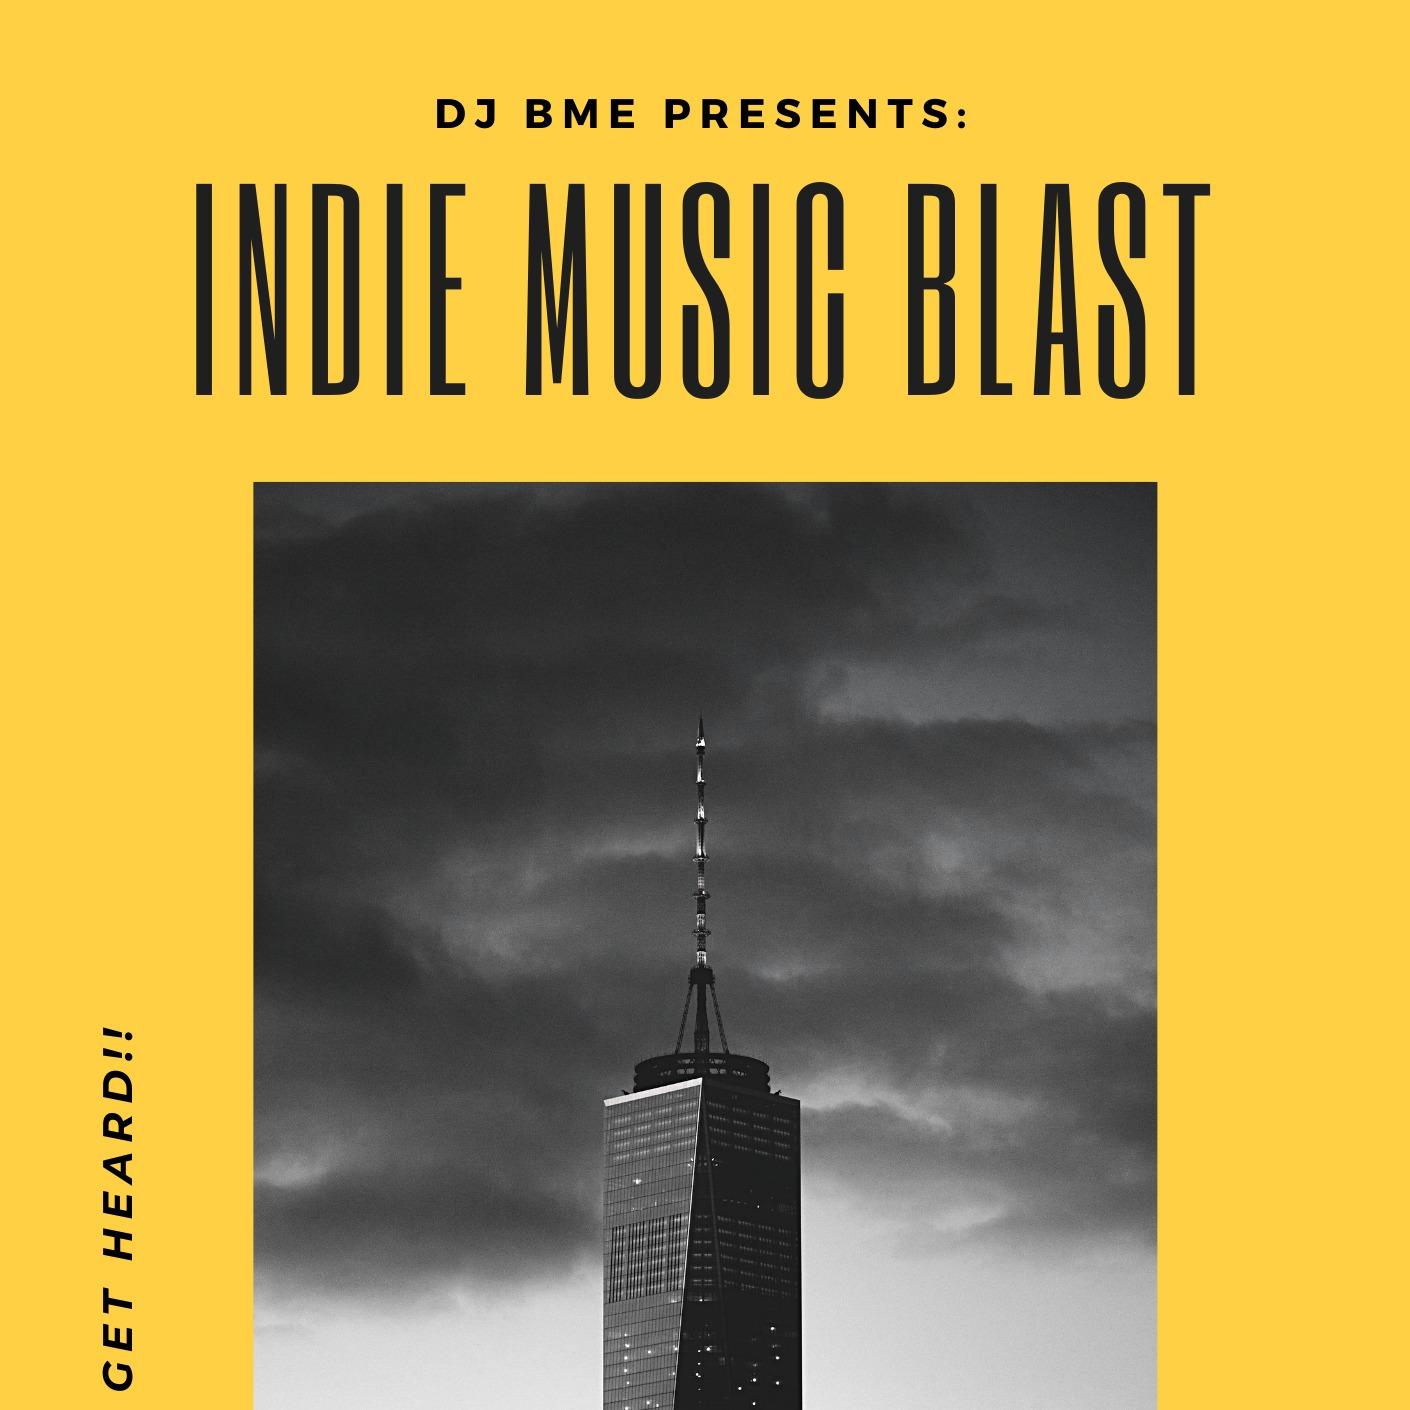 DJ BME Indie Music Blast